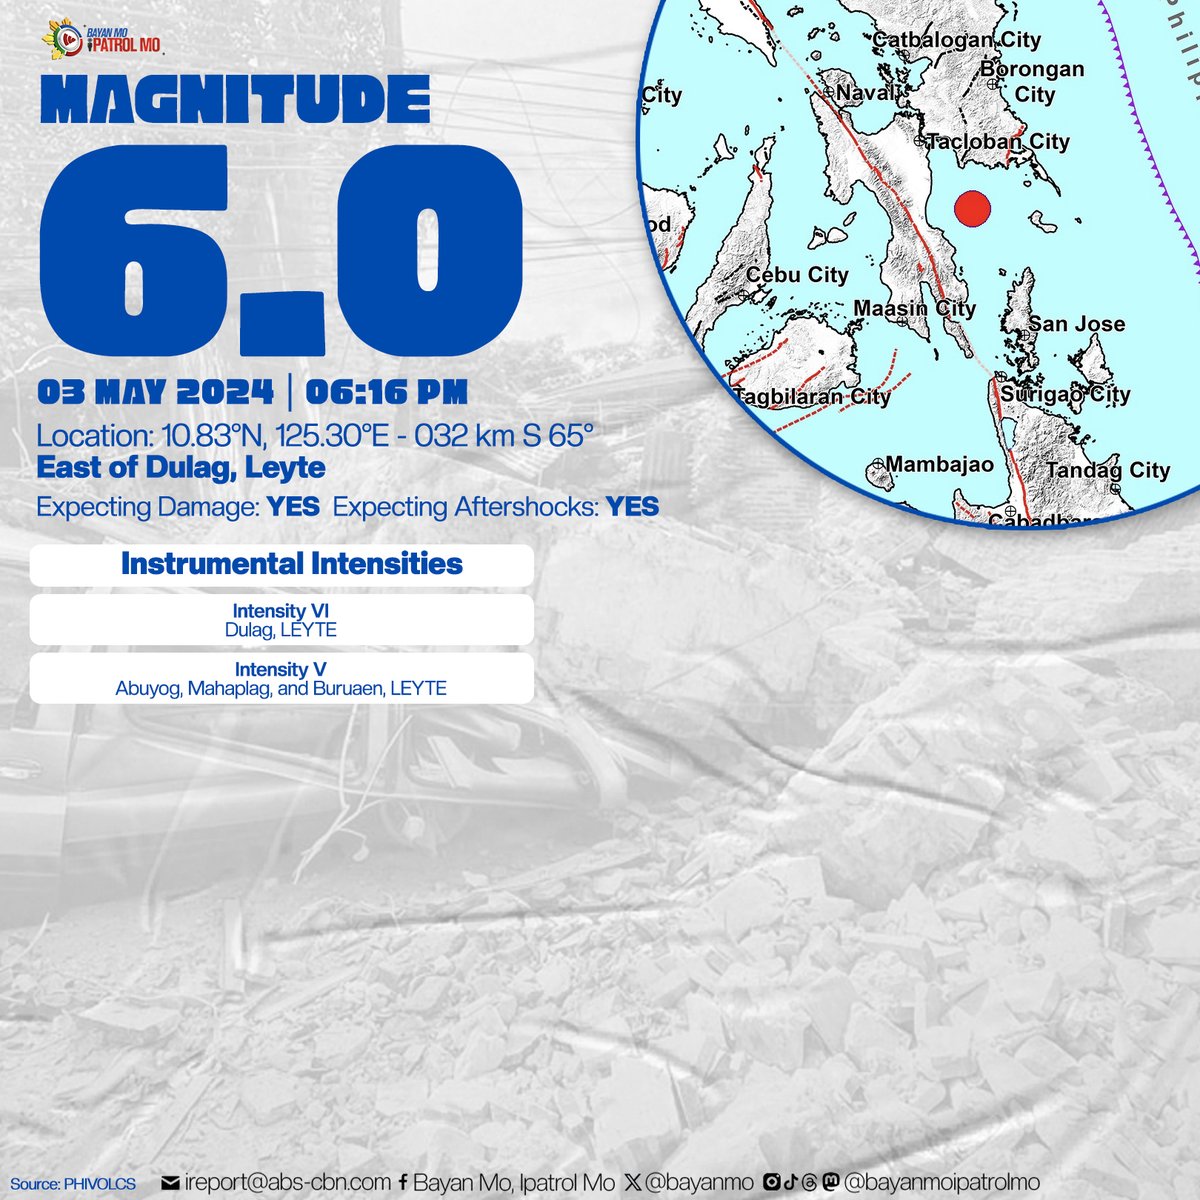 #LindolPatrol Kapamilya, naramdaman niyo ba ang lindol kanina?

Niyanig ng magnitude 6.0 na lindol ang Dulag, #Leyte bandang 6:16 p.m. ngayong araw, Mayo 3.

#LindolPH
#EarthquakePH
#BMPM